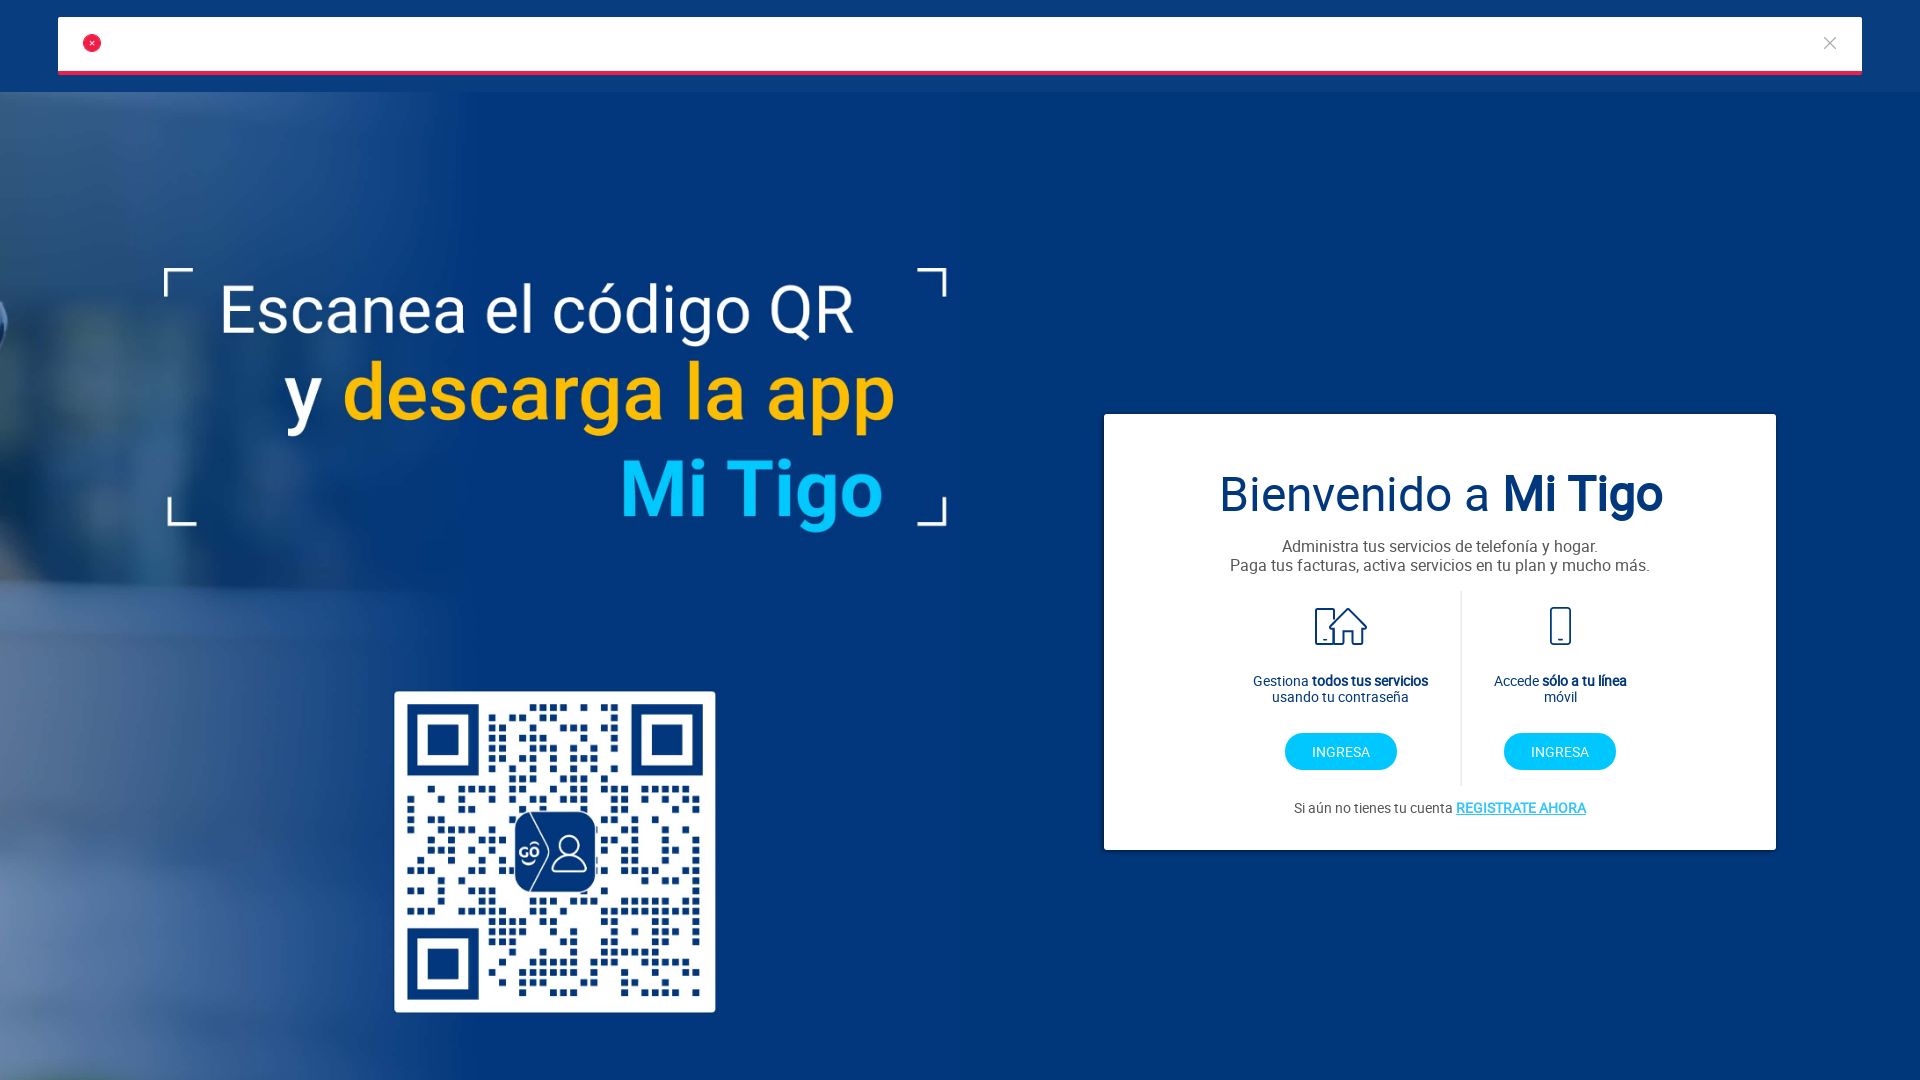 Website status mi.tigo.com.co is   ONLINE